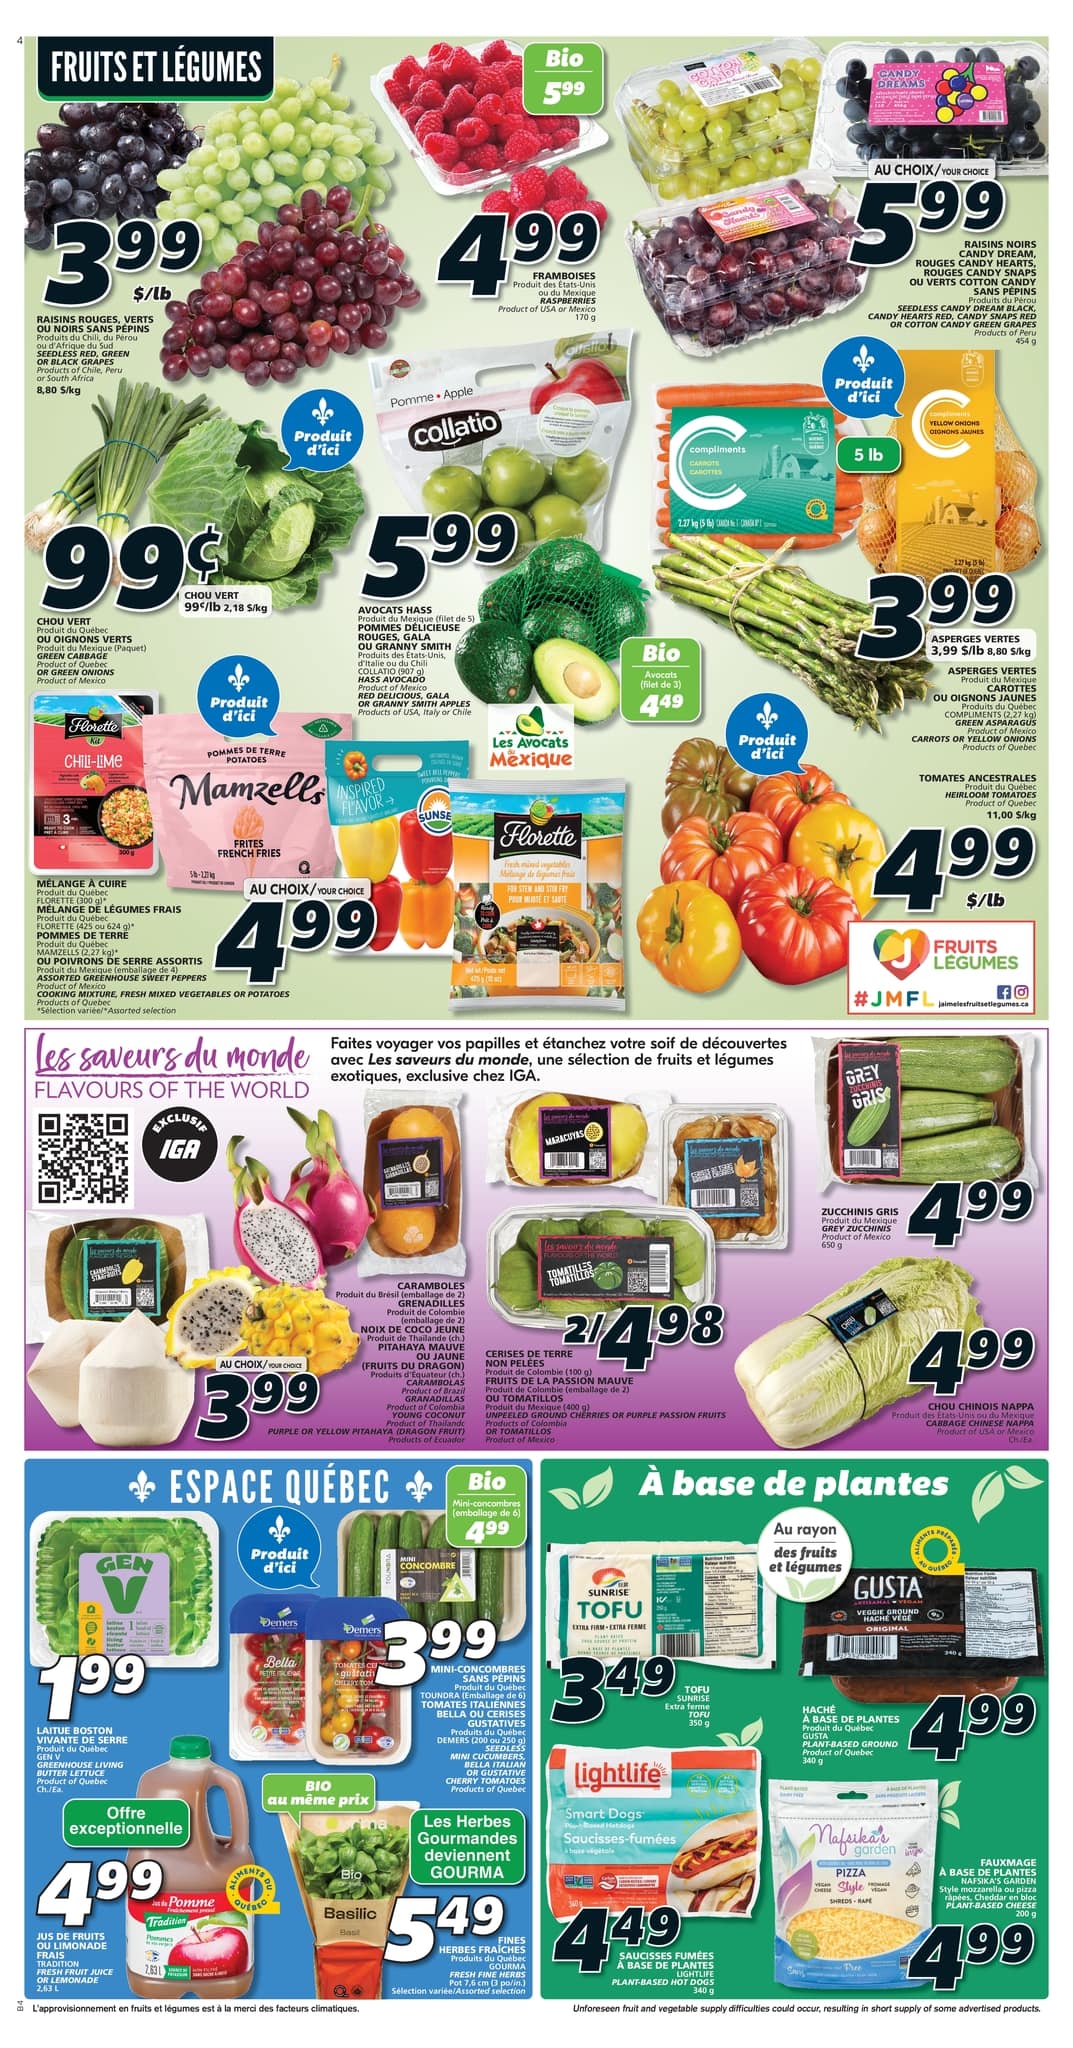 IGA - Quebec - Weekly Flyer Specials - Page 7